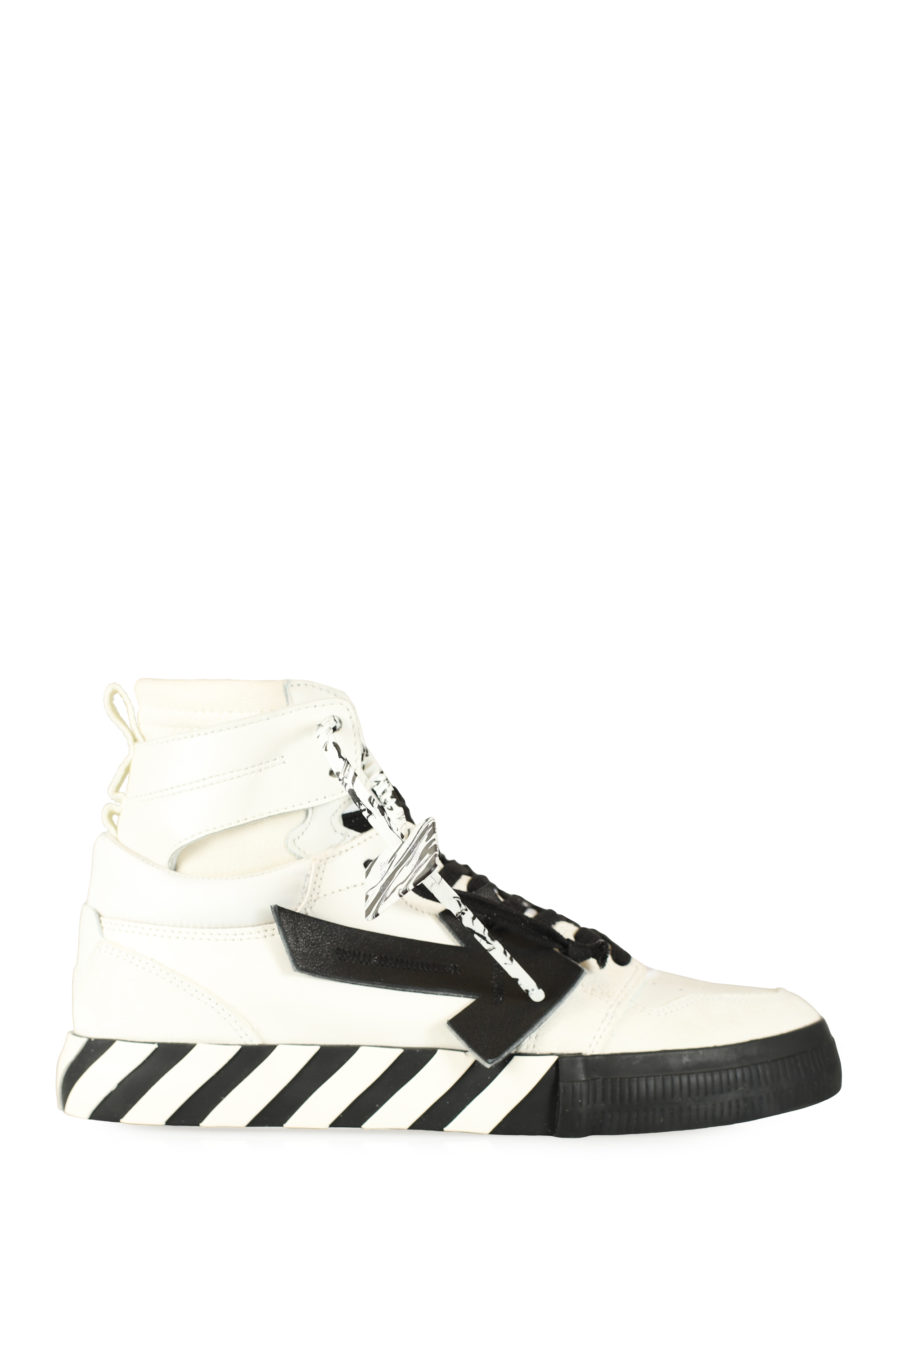 Zapatillas "Vulcanized High Top" blanco y negro - IMG 3481